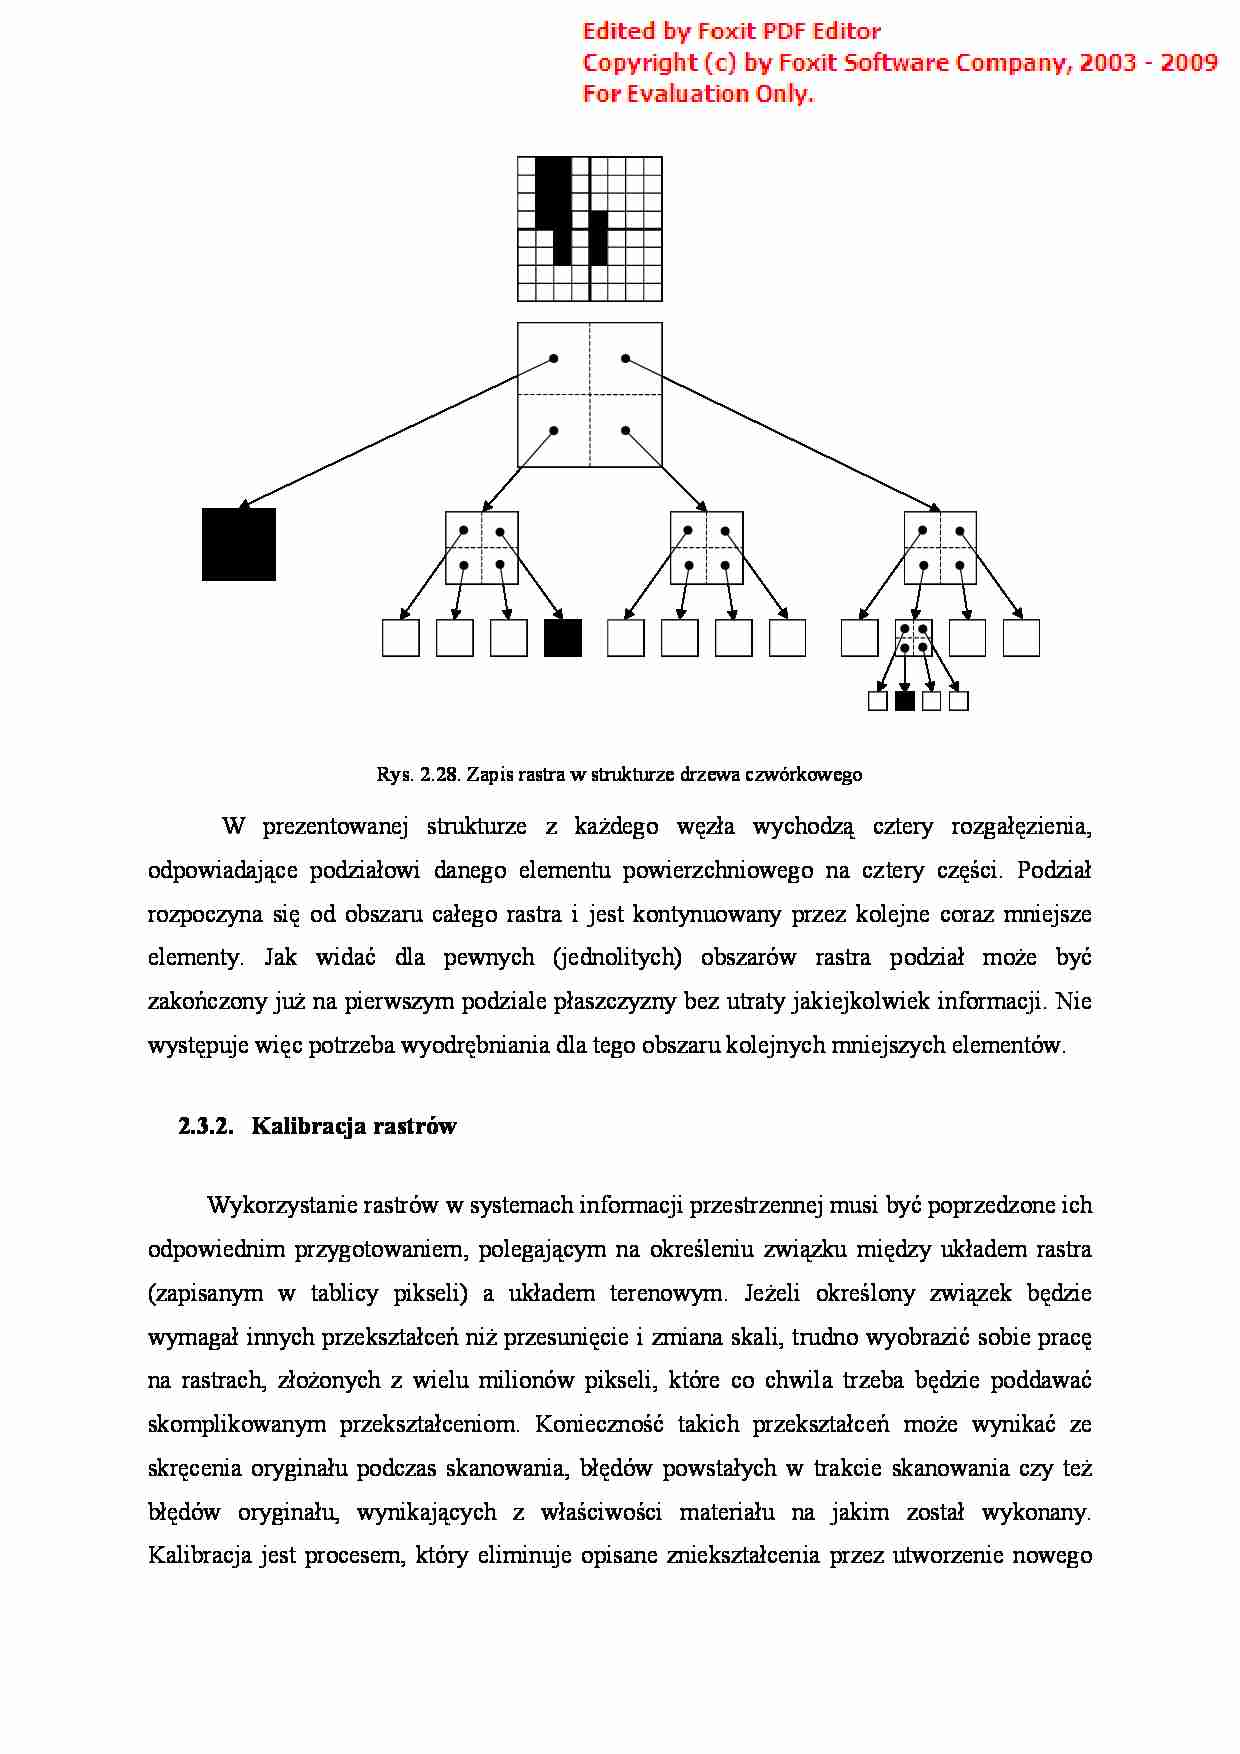 System informacji przestrzennej - notatki z wykładu 4 - strona 1